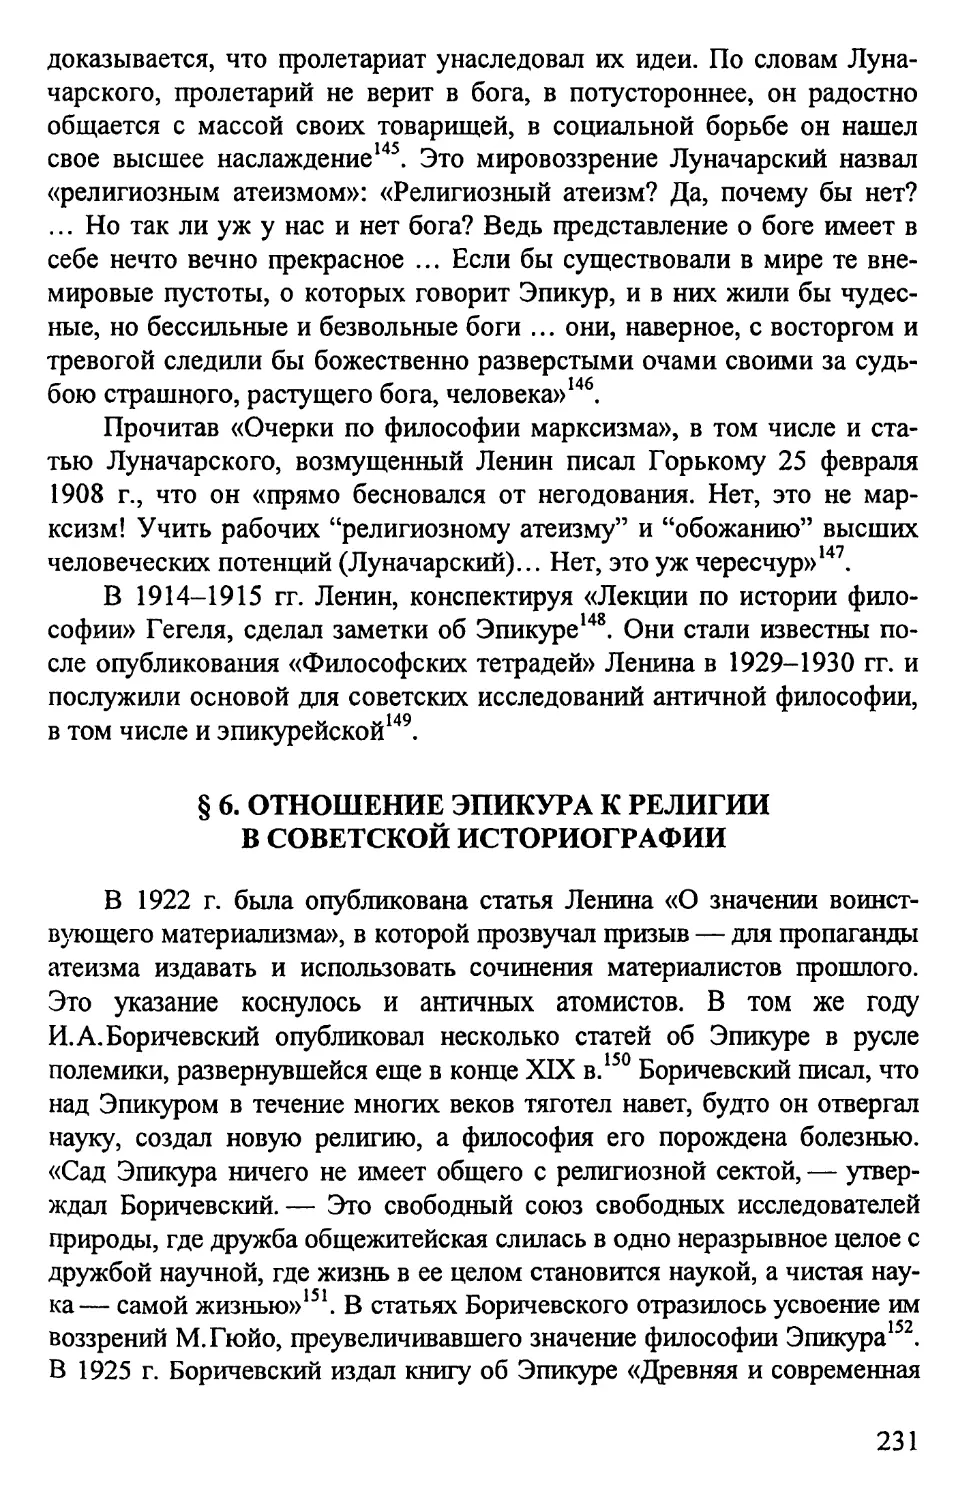 § 6. Отношение Эпикура к религии в советской историографии